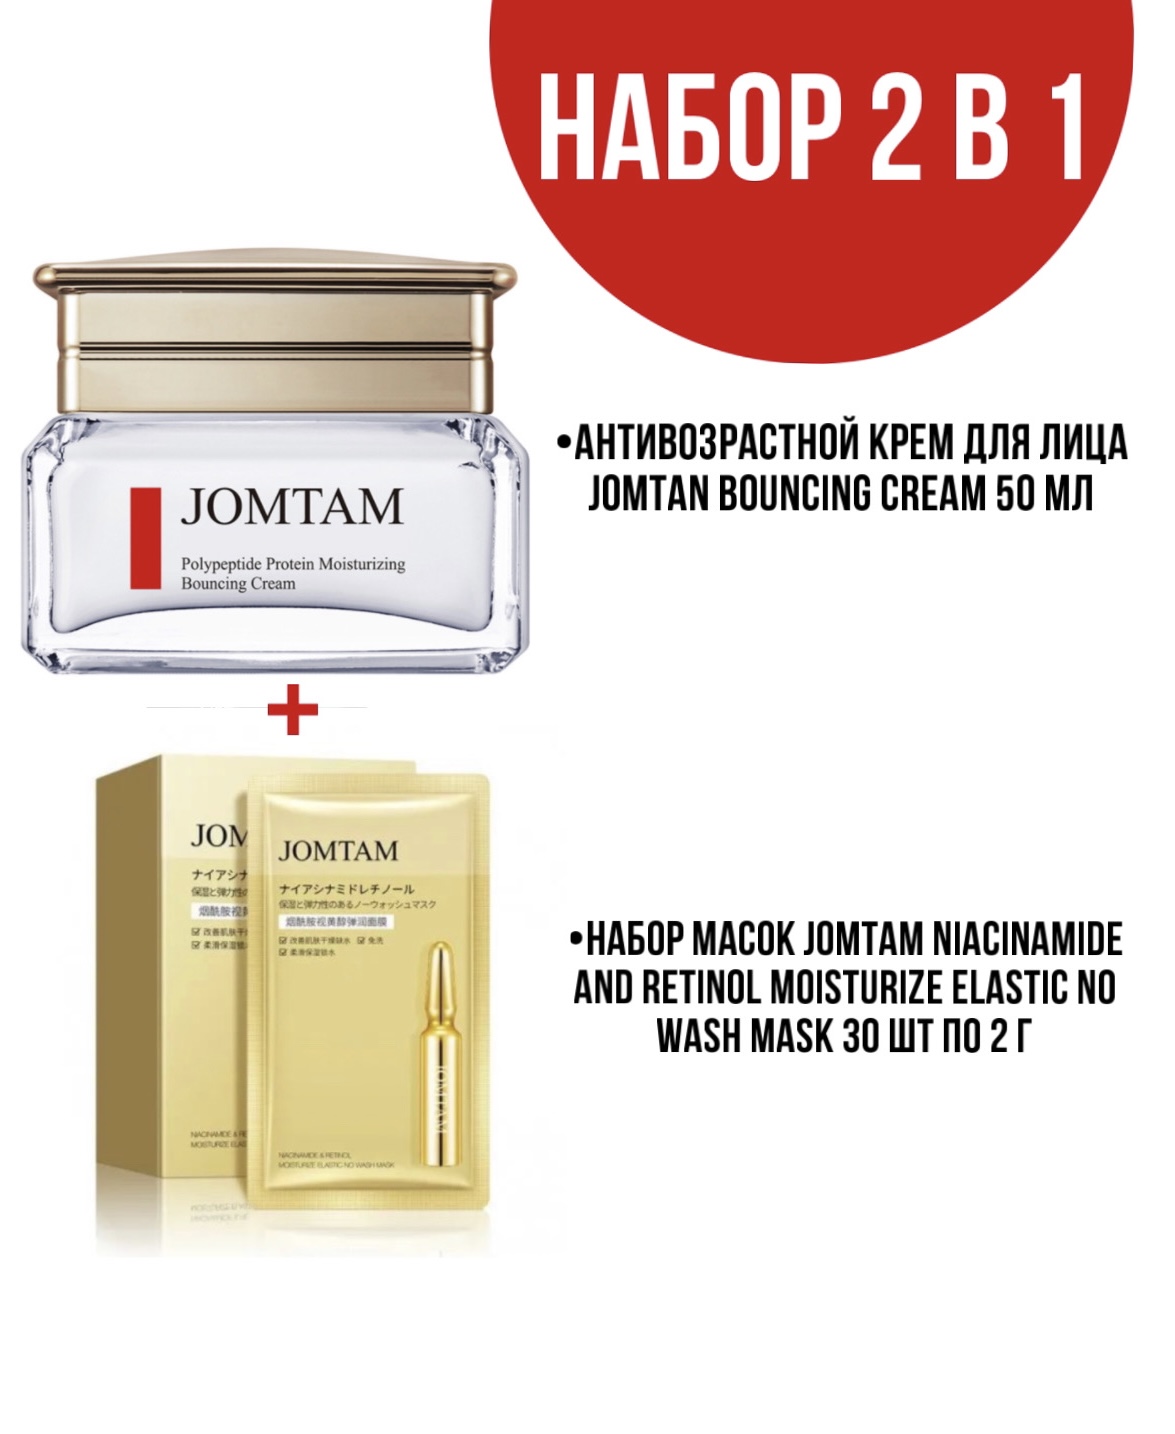 Крем Jomtam Bouncing Cream для лица 50 мл и набор масок Jomtam Niacinamide 30 шт по 2 г резинка для волос селена набор 2 шт плотная жатка микс